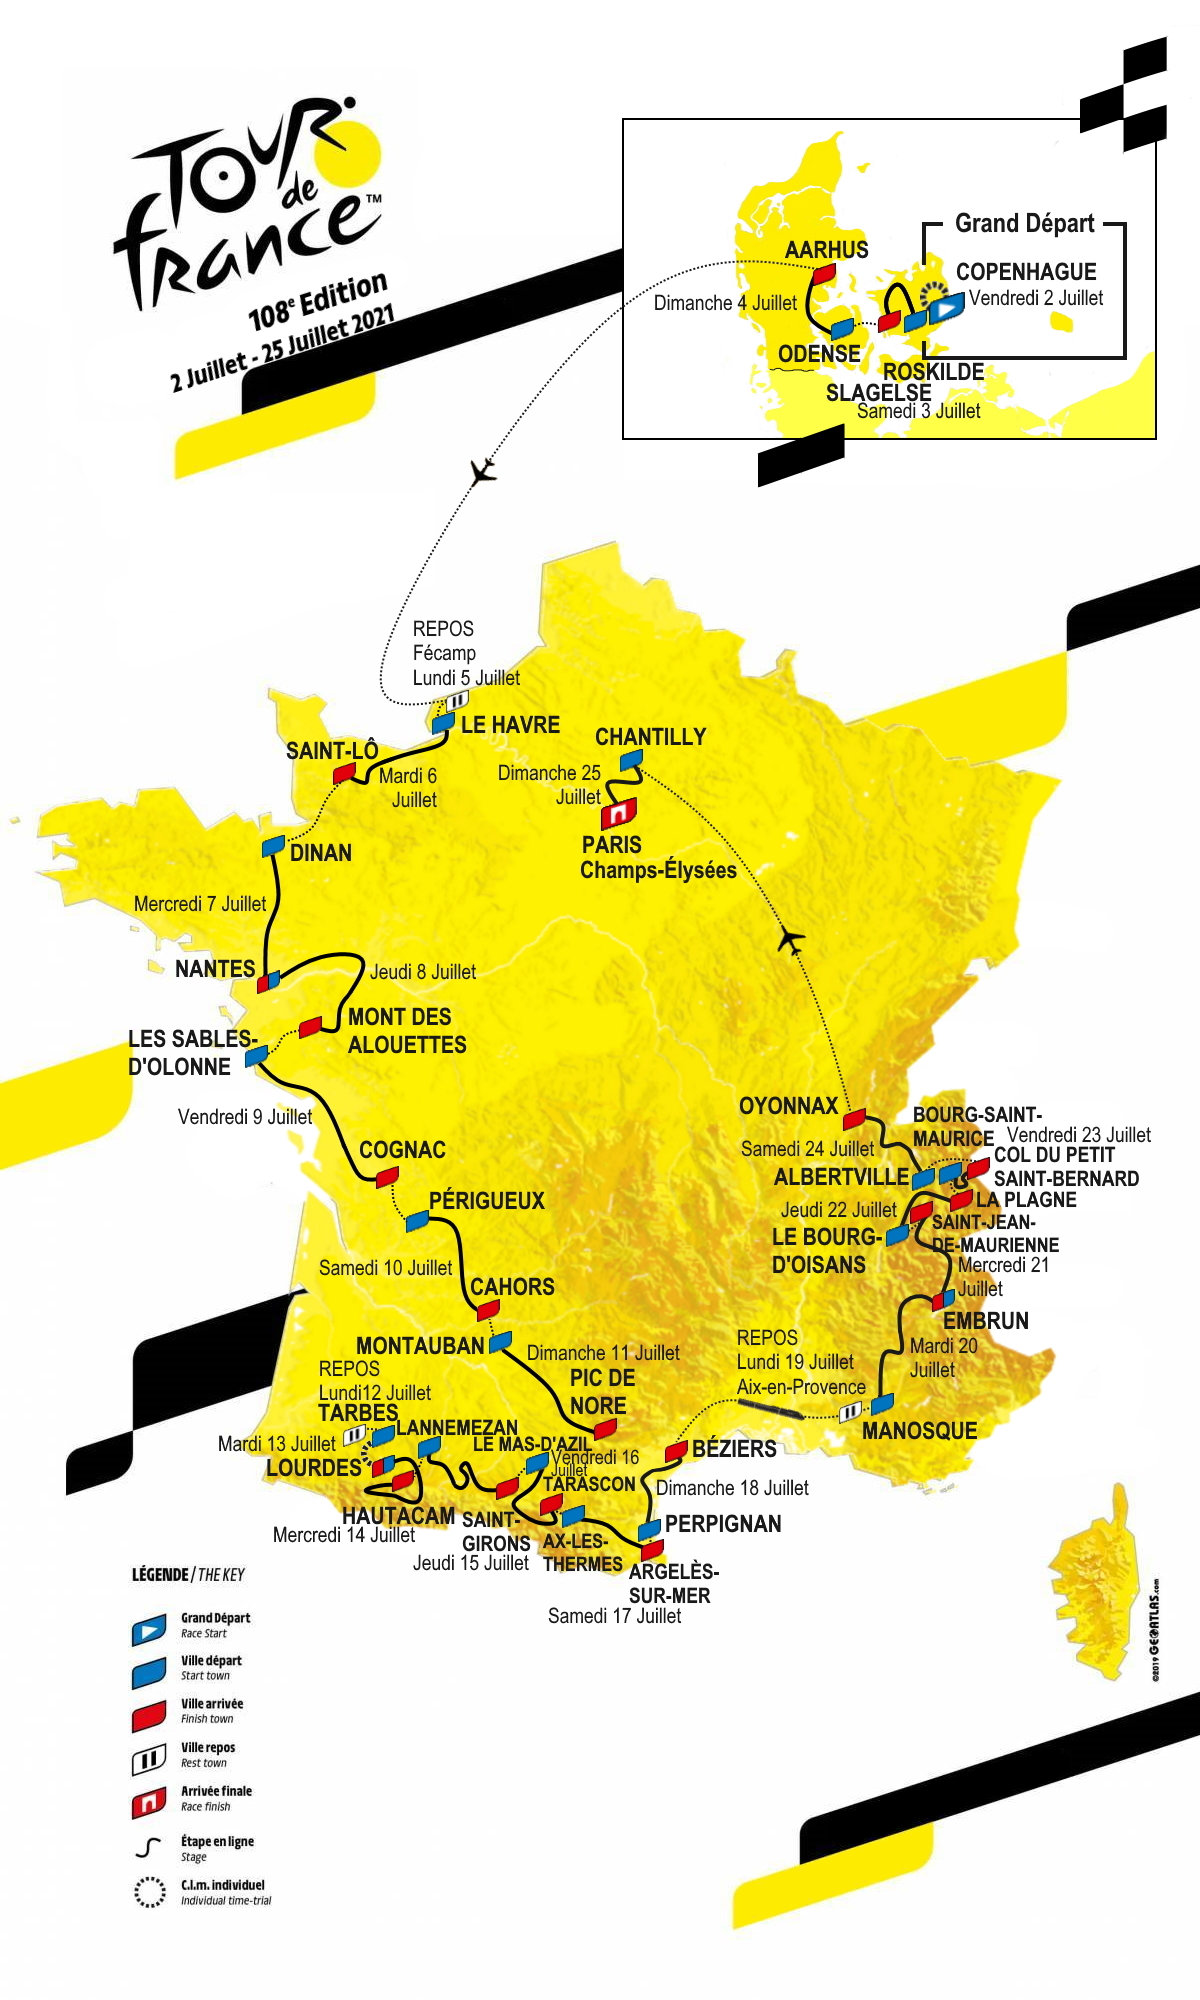 [Concours] Tour de France 2022 - Résultats p.96 - Page 36 - Le - Tour De France 2022 Etape Du 21 Juillet